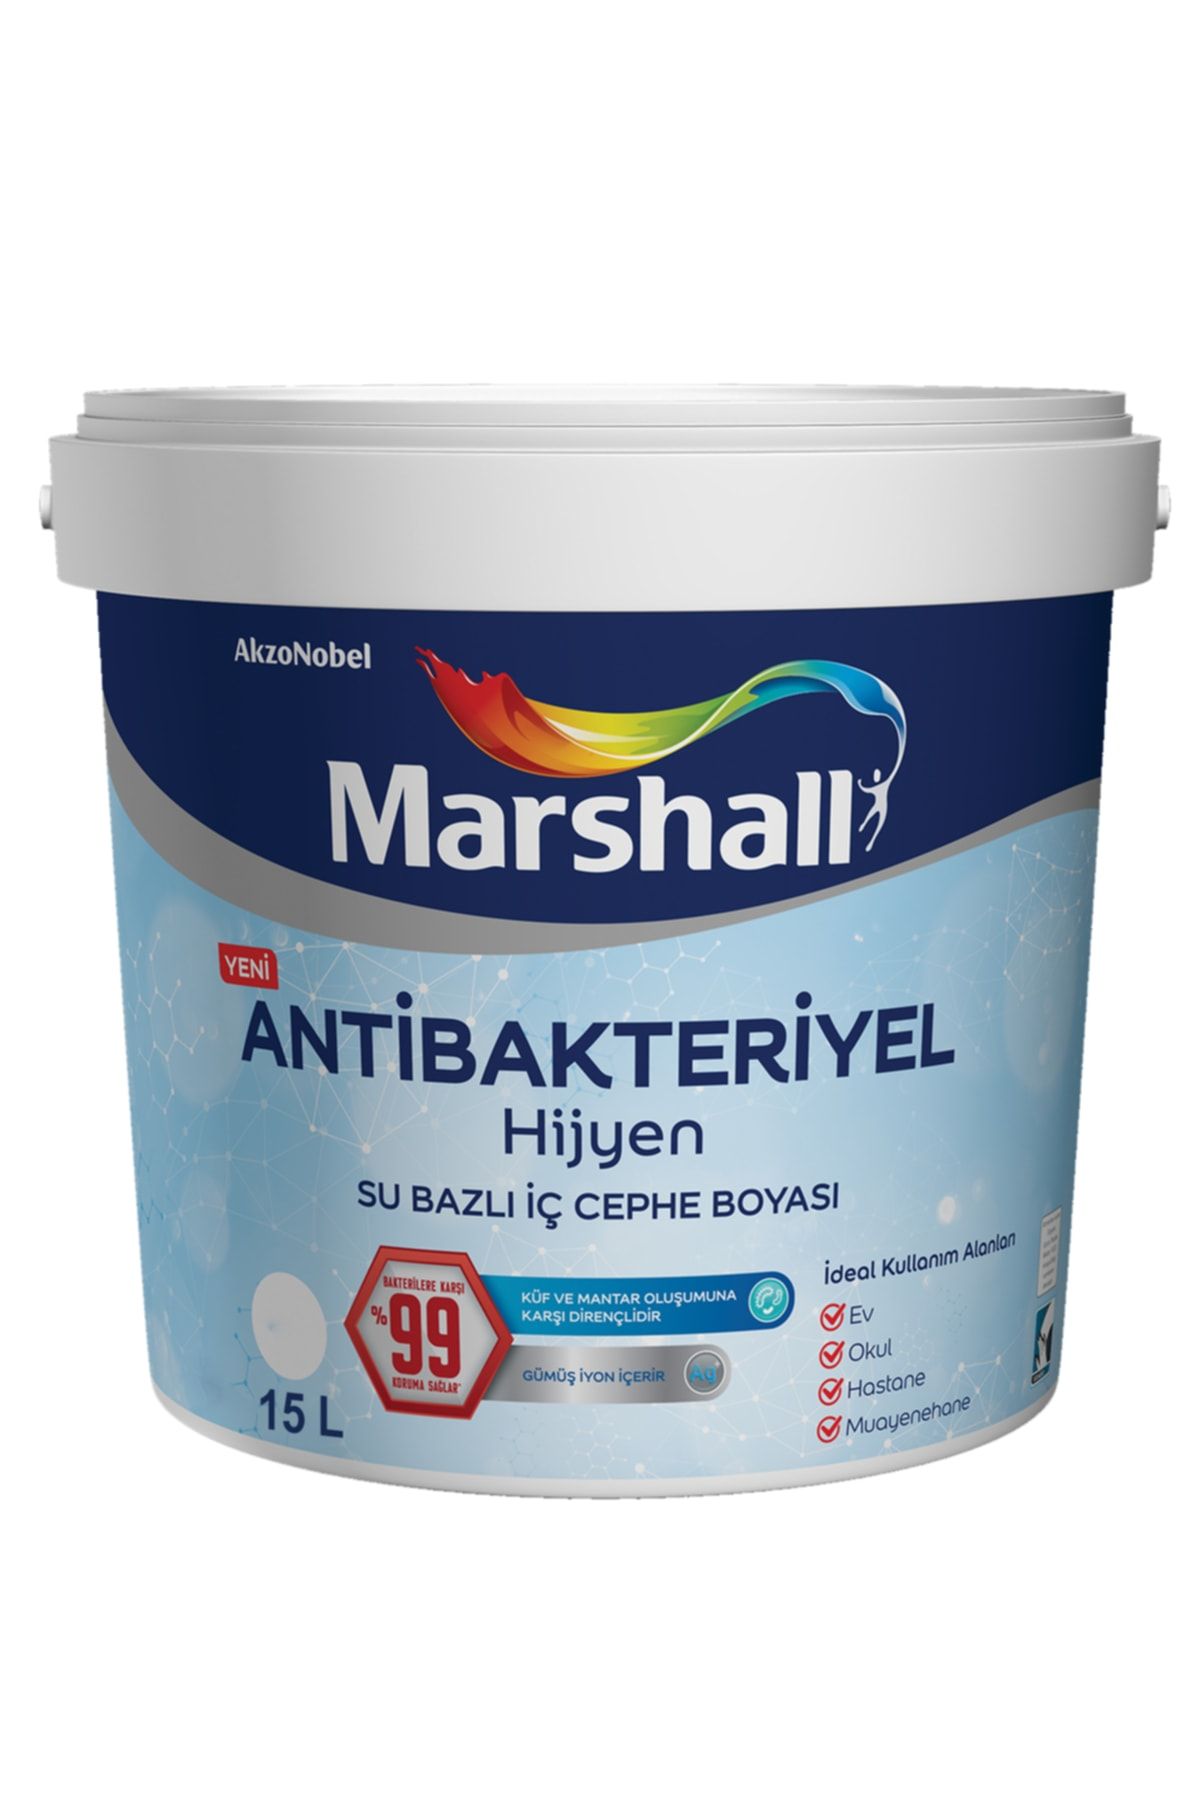 Marshall Antibakteriyel Hijyen Iç Cephe Boyası Mum Işığı